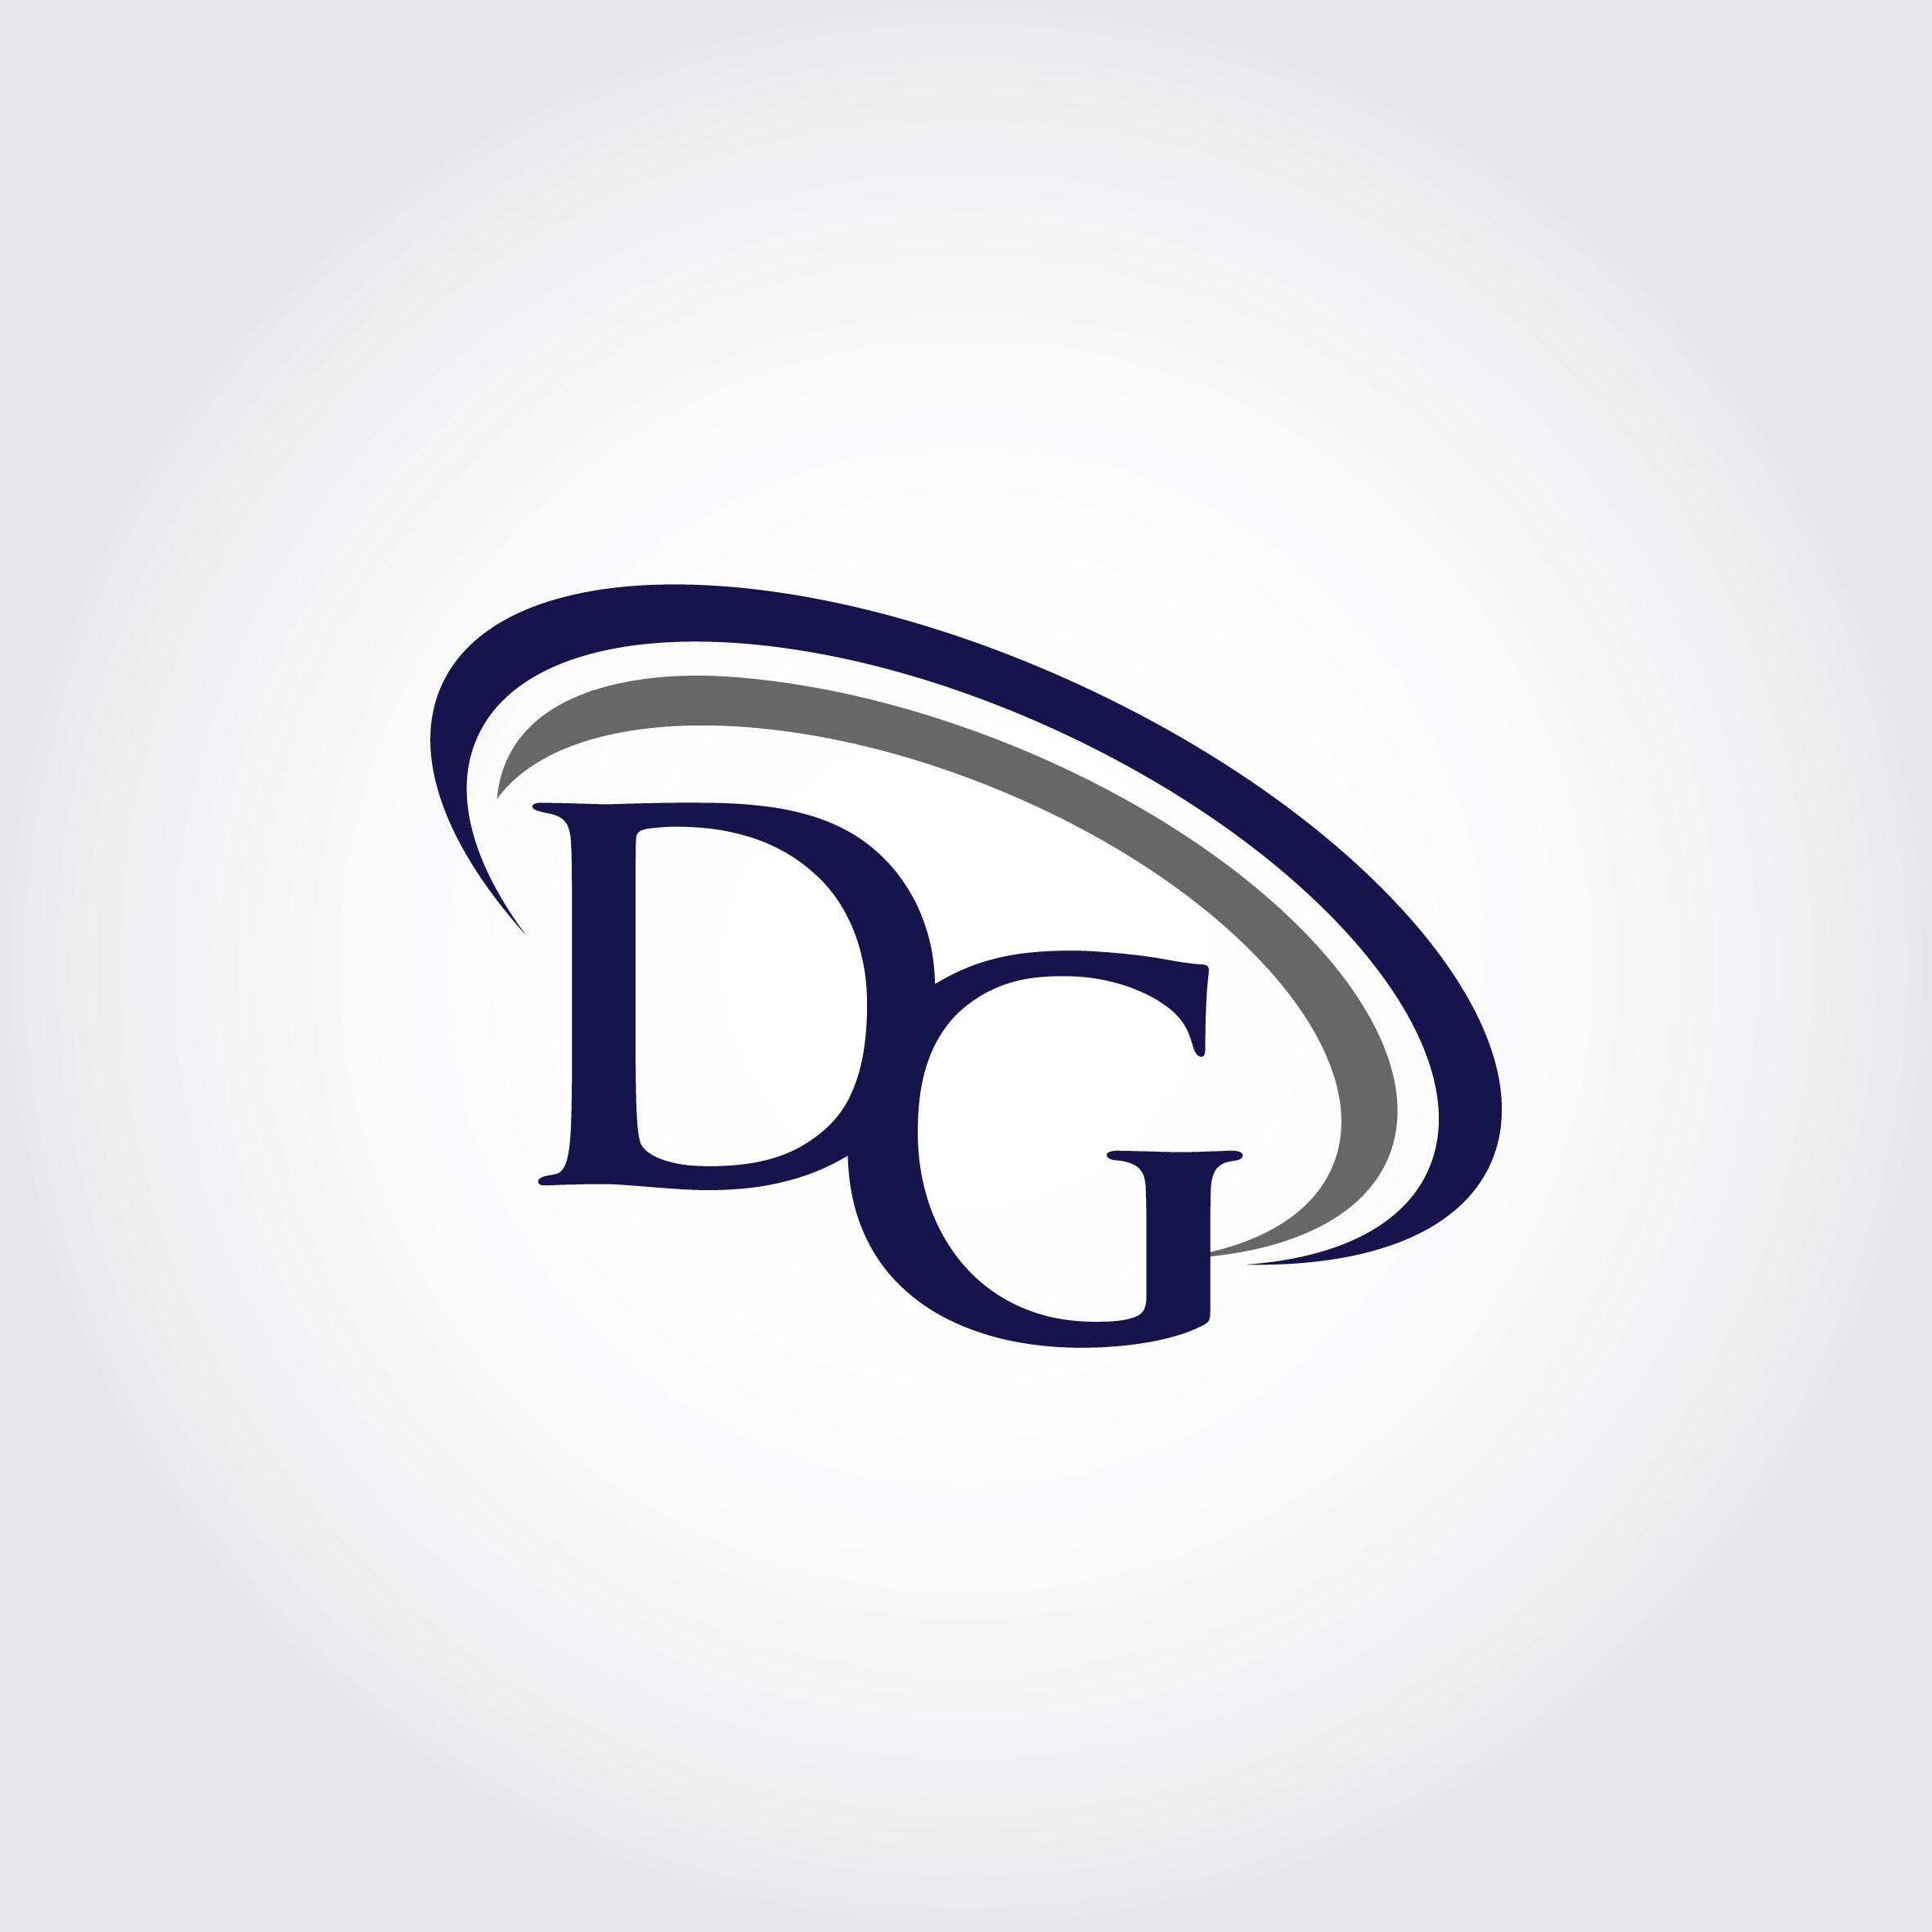 Dg Logo Design Vector | islamiyyat.com